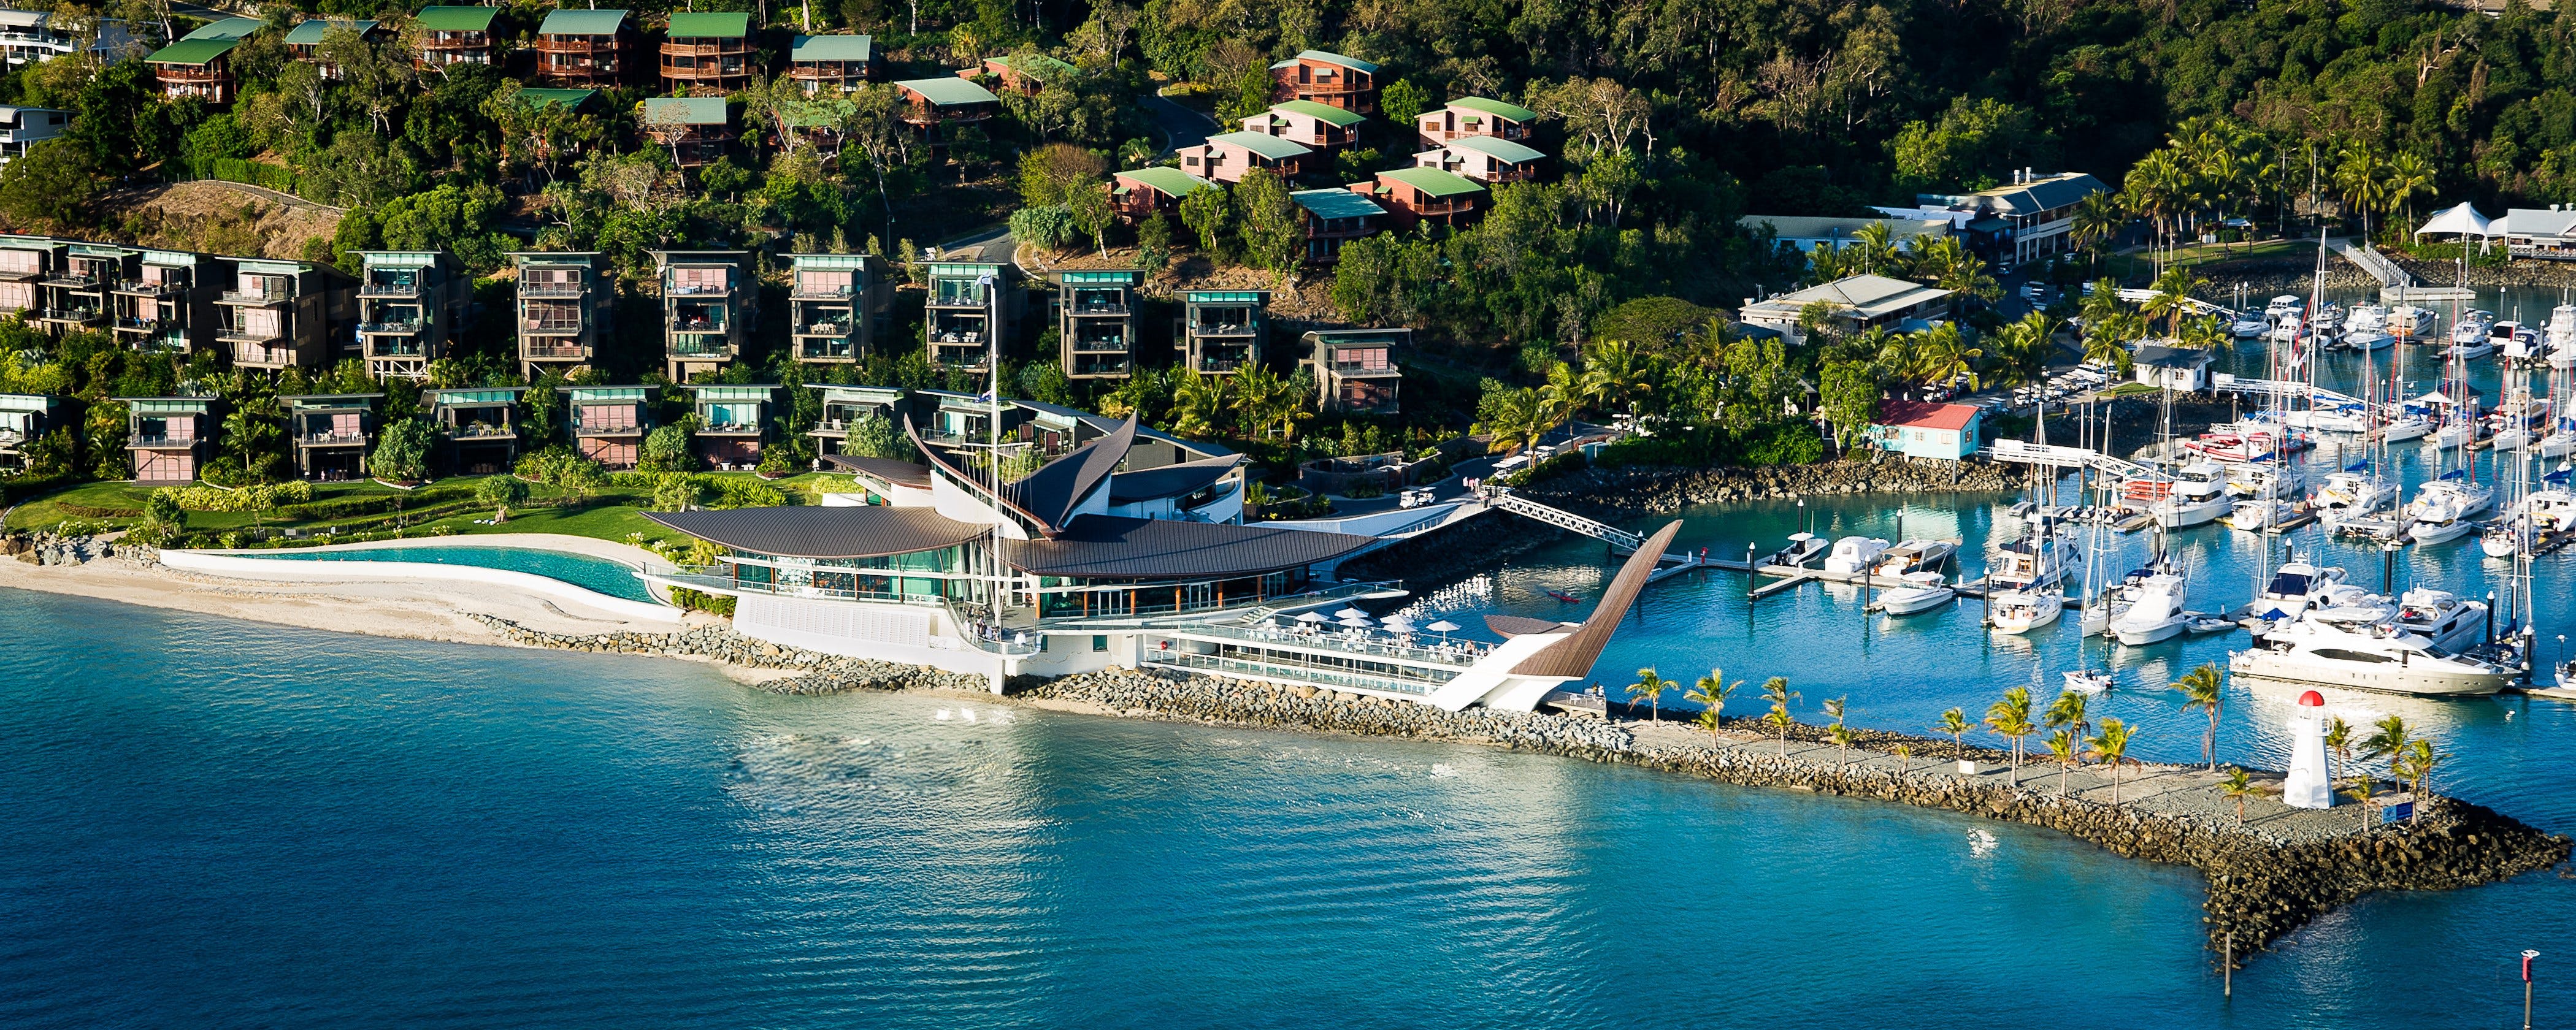 Hamilton Island Yacht Club - Yamba Accommodation